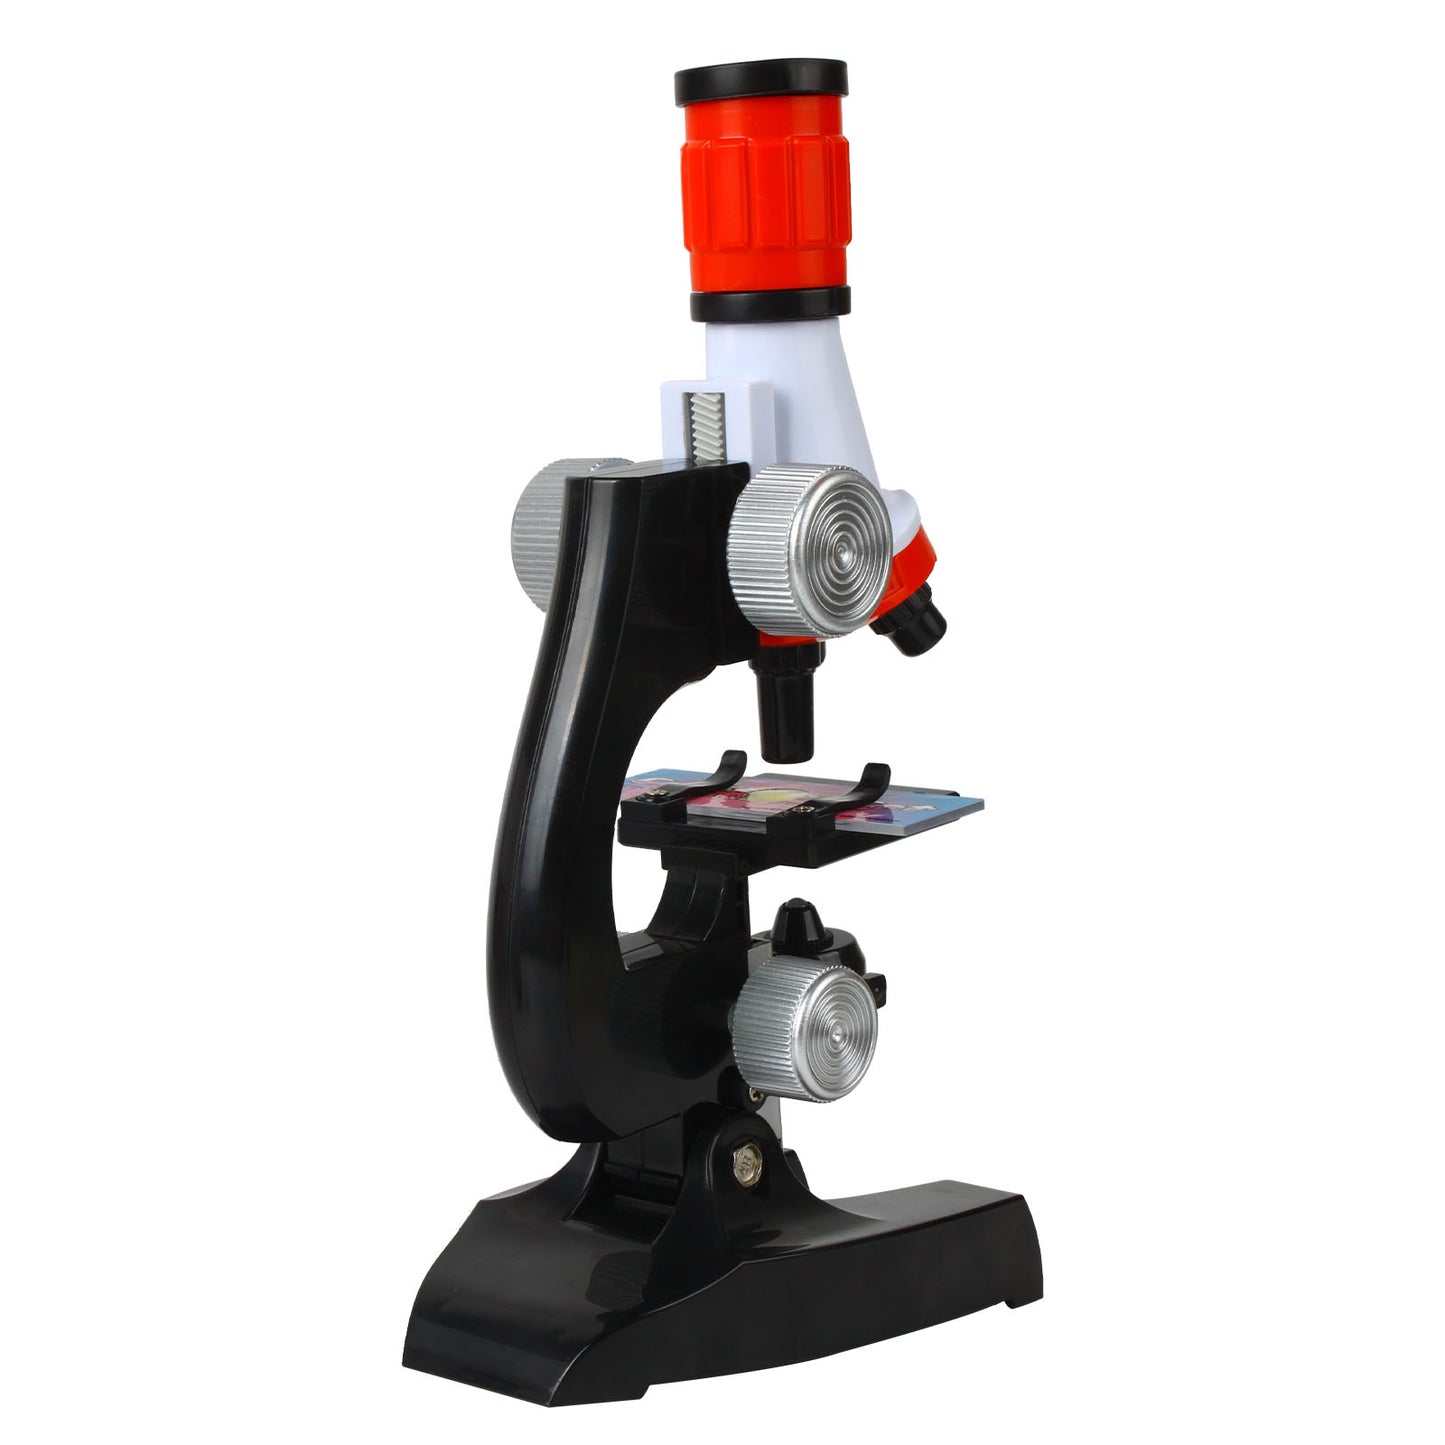 NOOLY Kids Microscope Science Kit XWJWJ-01